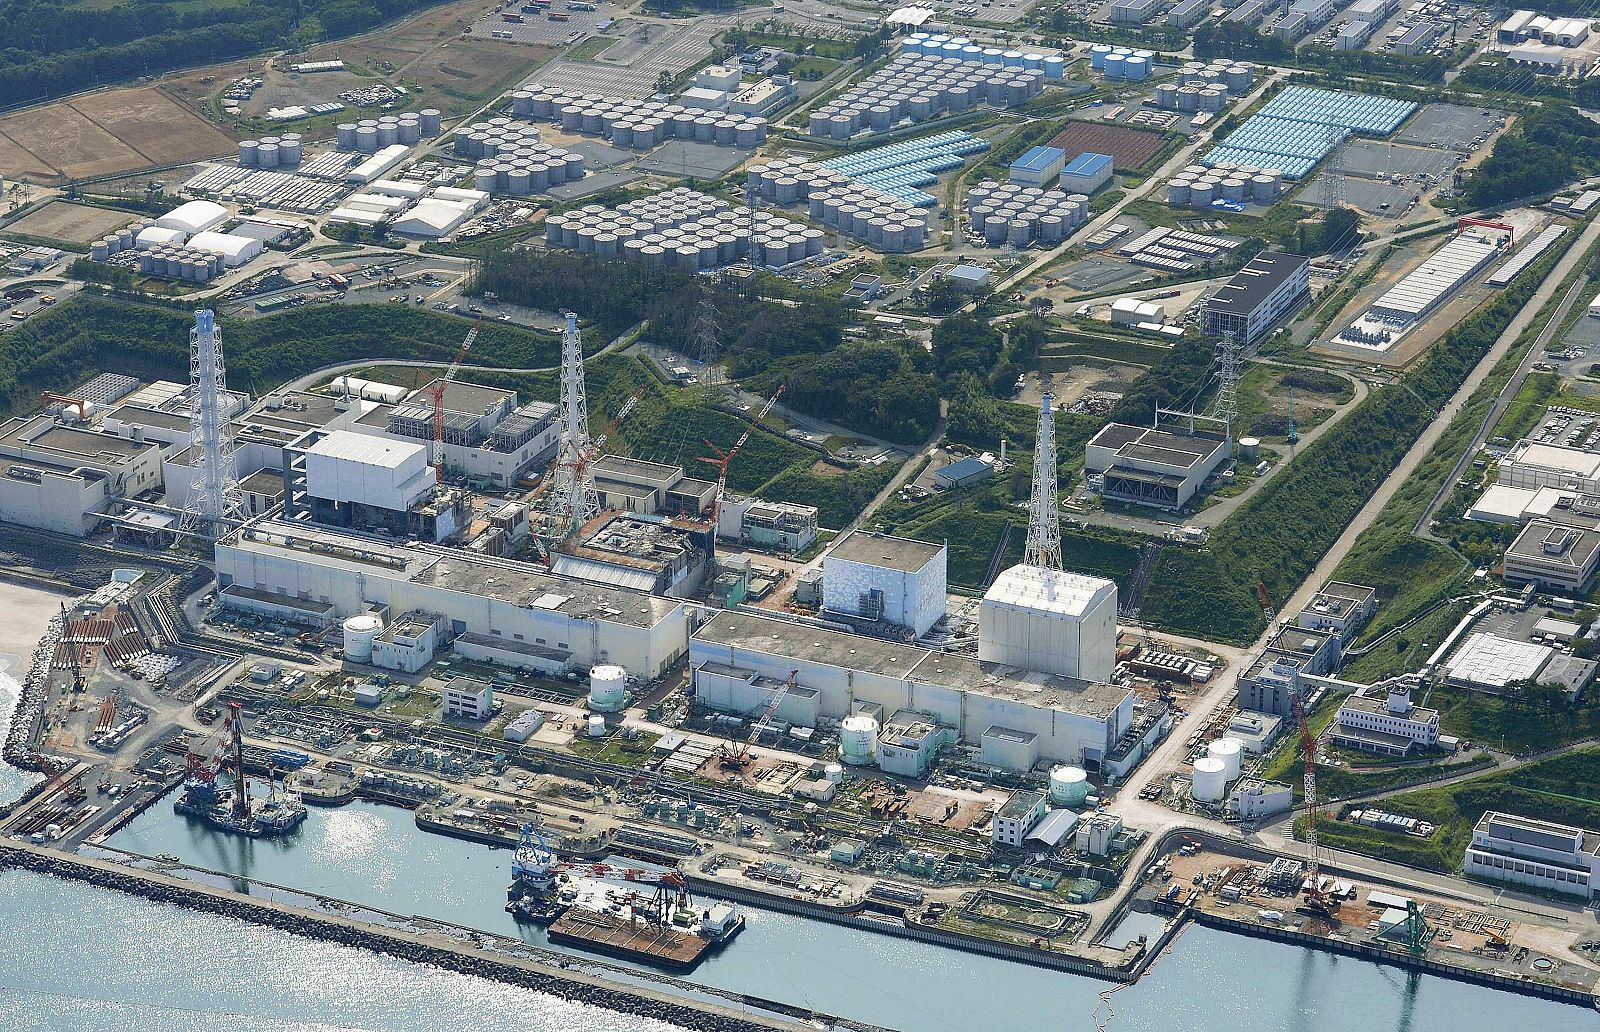 Vista aérea de la central nuclear de Fukushima. Los habitantes de la prefectura desplazados por el terremoto y la crisis nuclear no pueden regresar aún a sus casas.